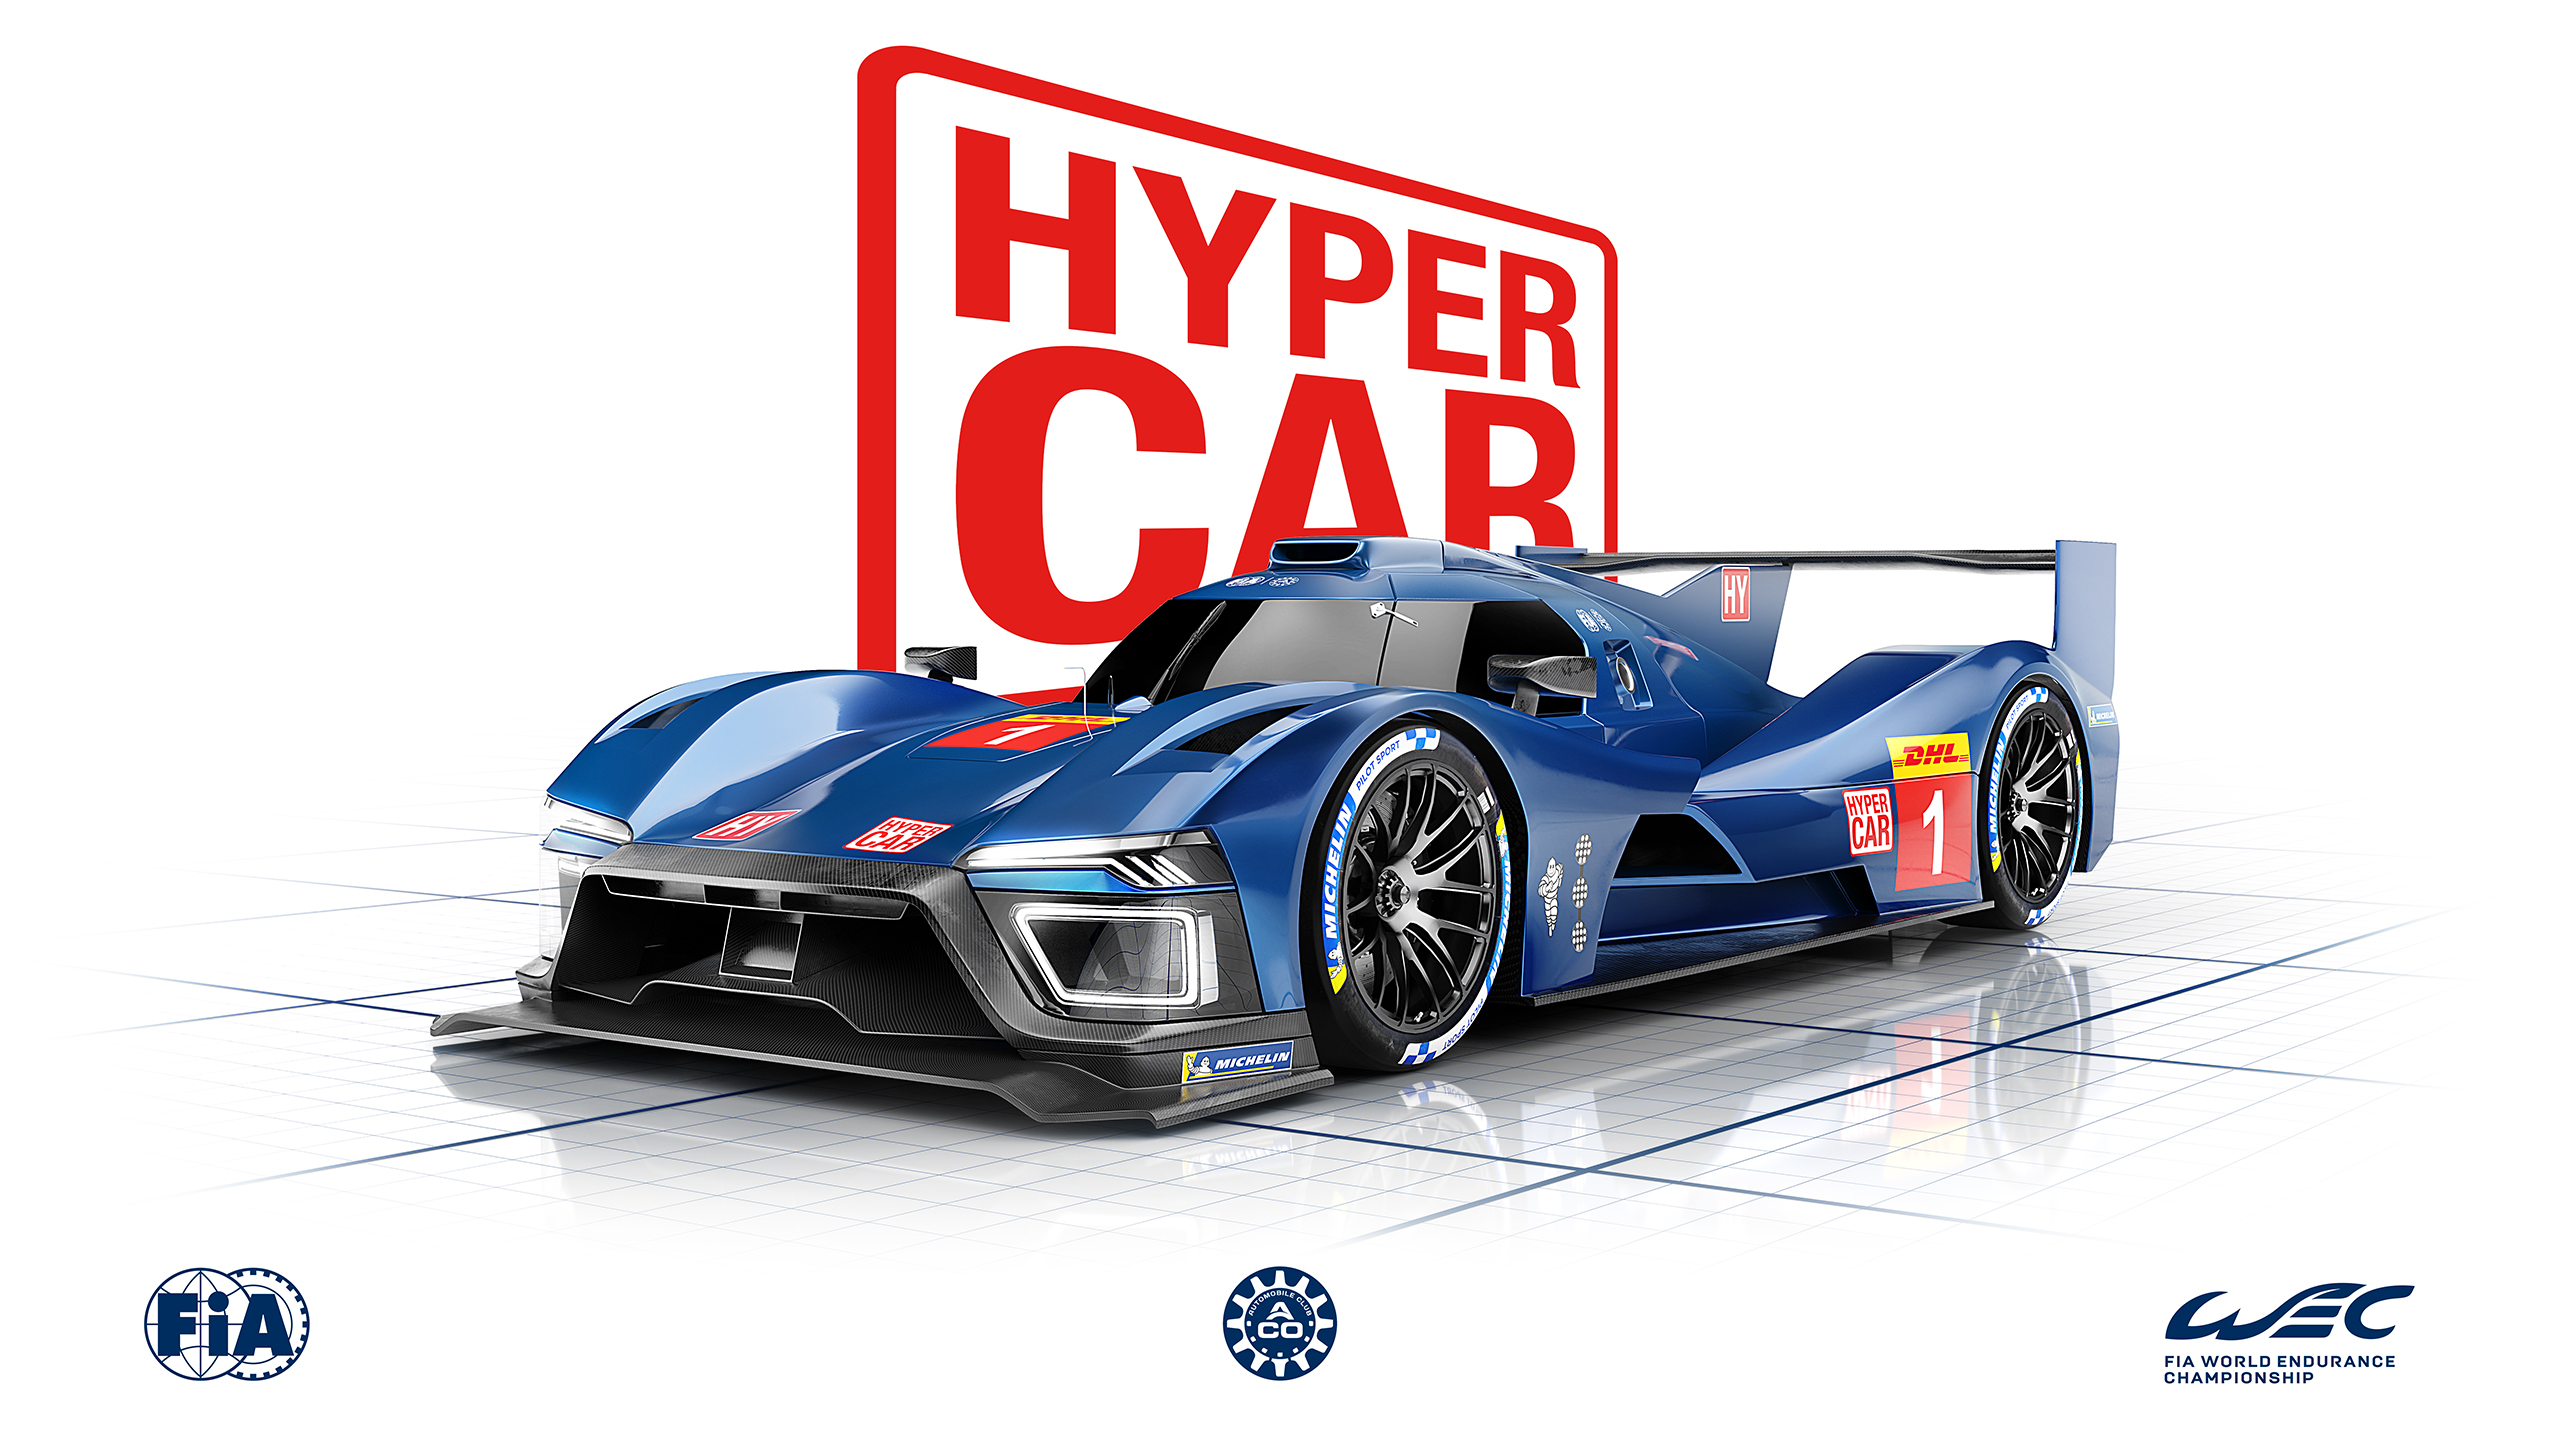 Hypercar explained  Federation Internationale de l'Automobile